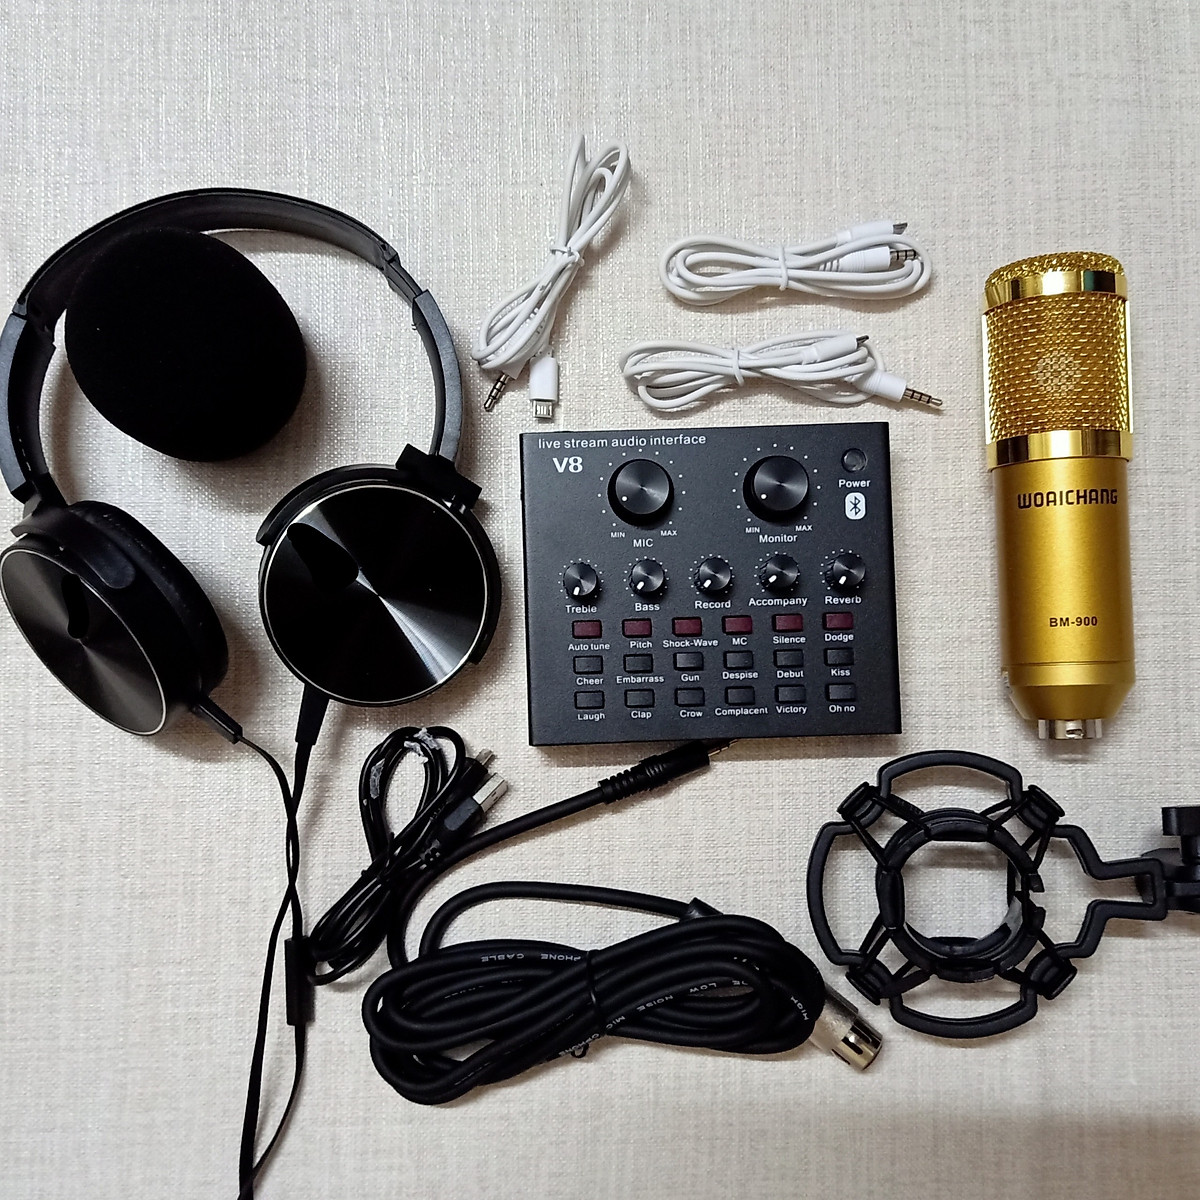 Combo Trọn Bộ thu Âm Micro BM 900 + Soundcard V8 Bluetooth Livestream Hát Karaoke Online - Tặng kèm tai nghe chụp tai - Đầy đủ phụ kiện, kết nối dễ dàng - Giá siêu rẻ, hát siêu hay - Hàng nhập khẩu